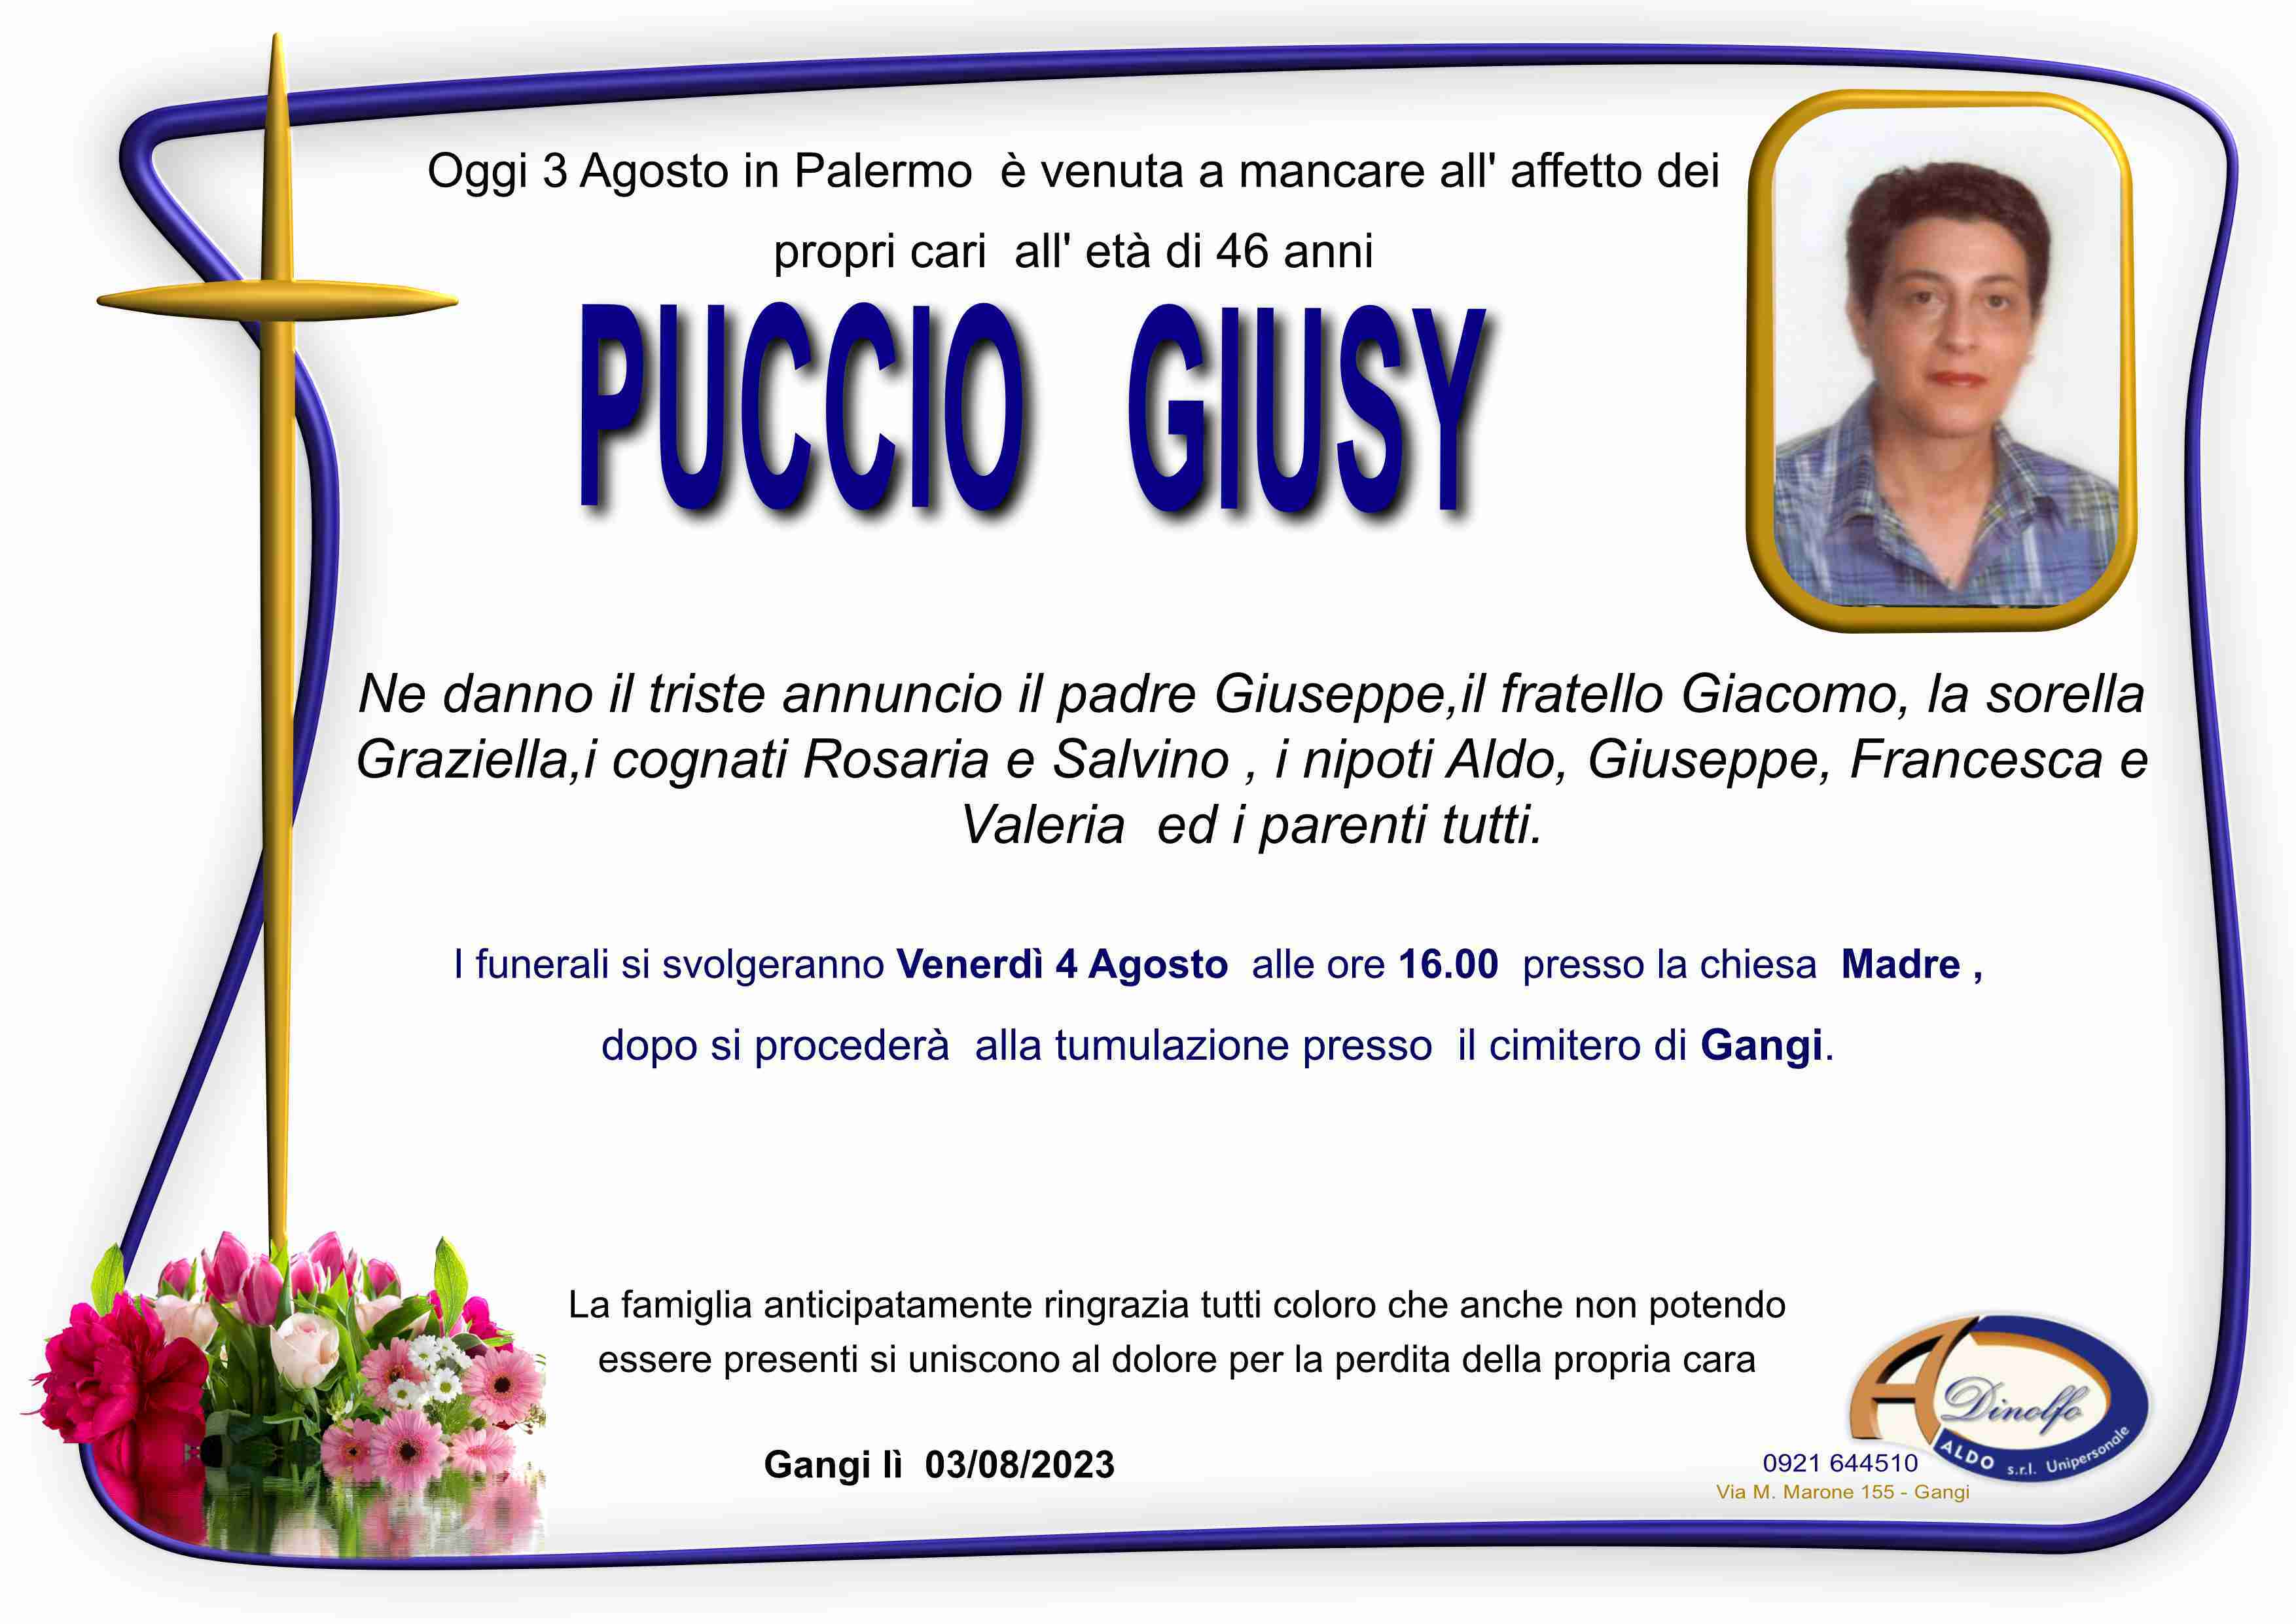 Giusy Puccio